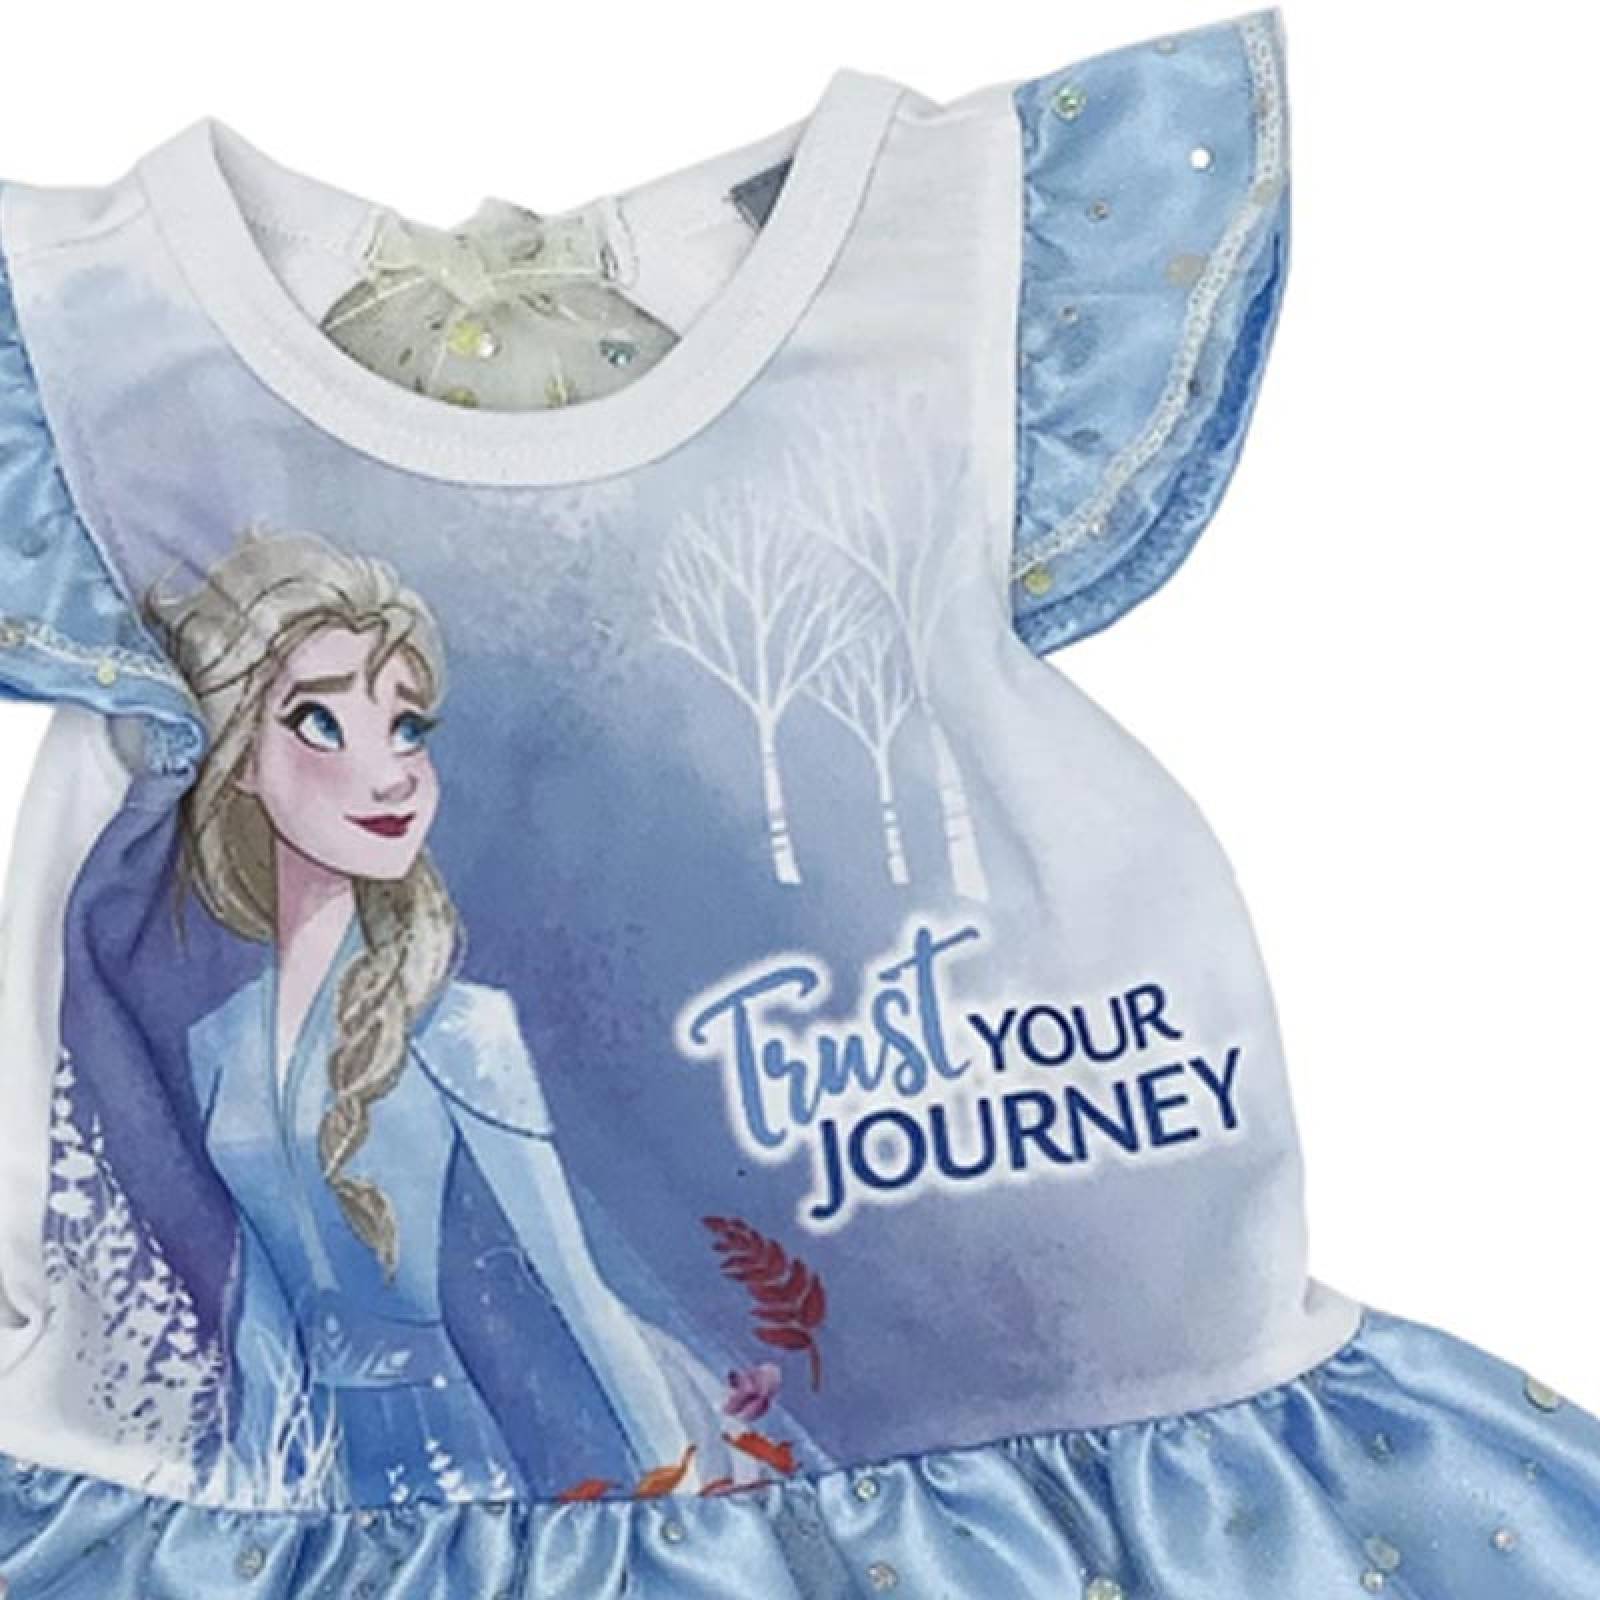 Vestido algodon con estampado Disney Elsa